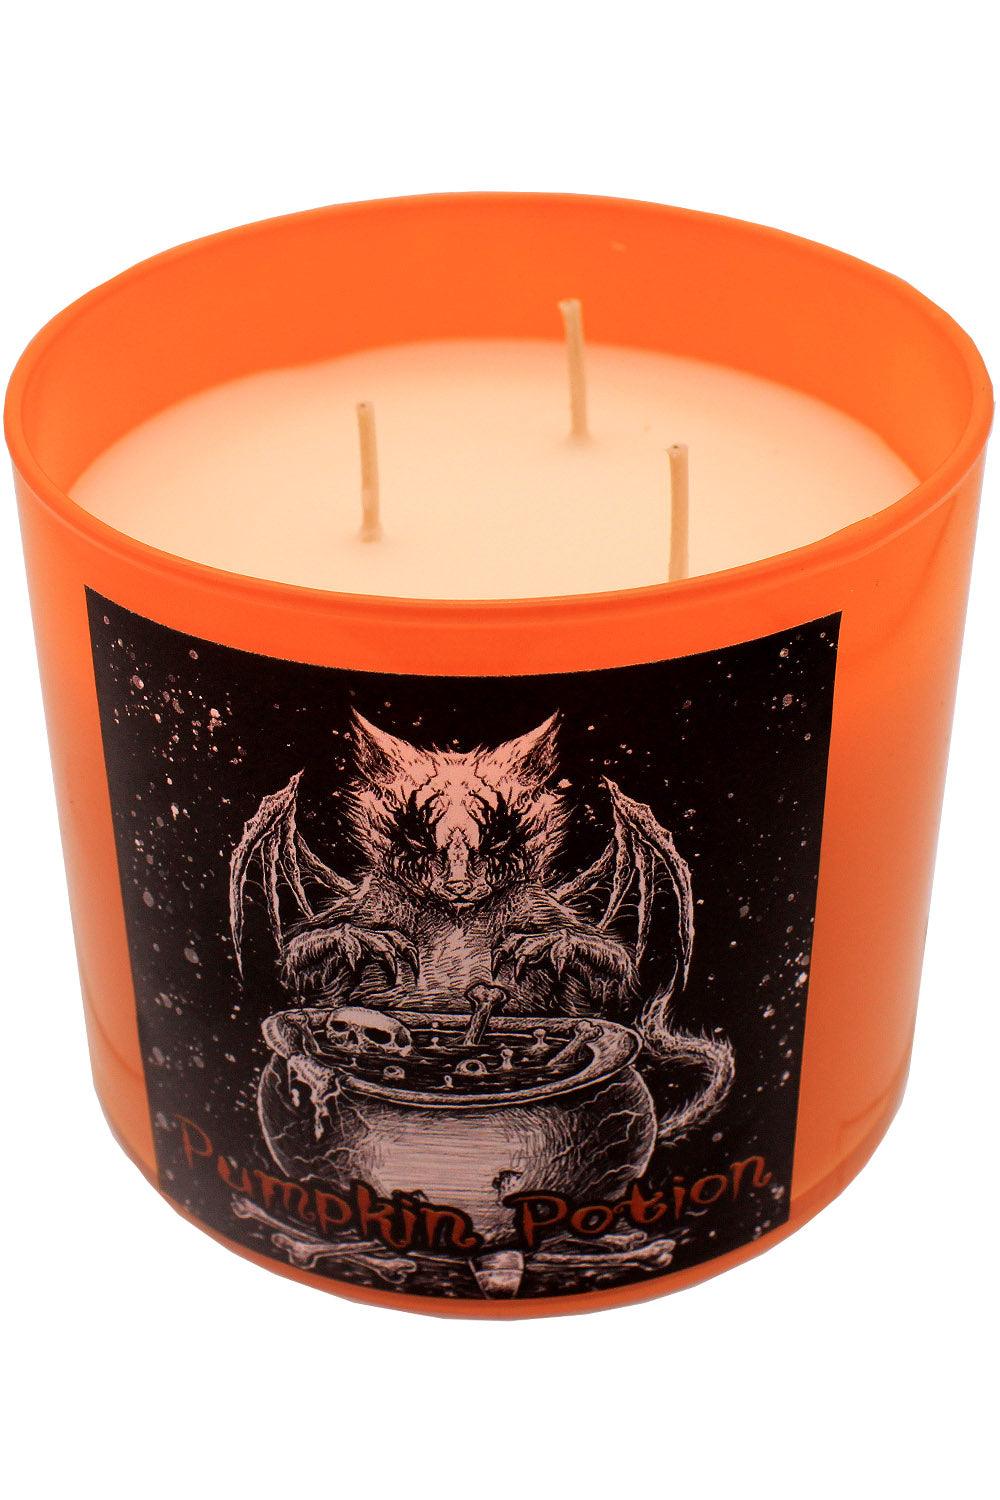 VampireFreaks Conjuring Cat Pumpkin Potion Candle - VampireFreaks